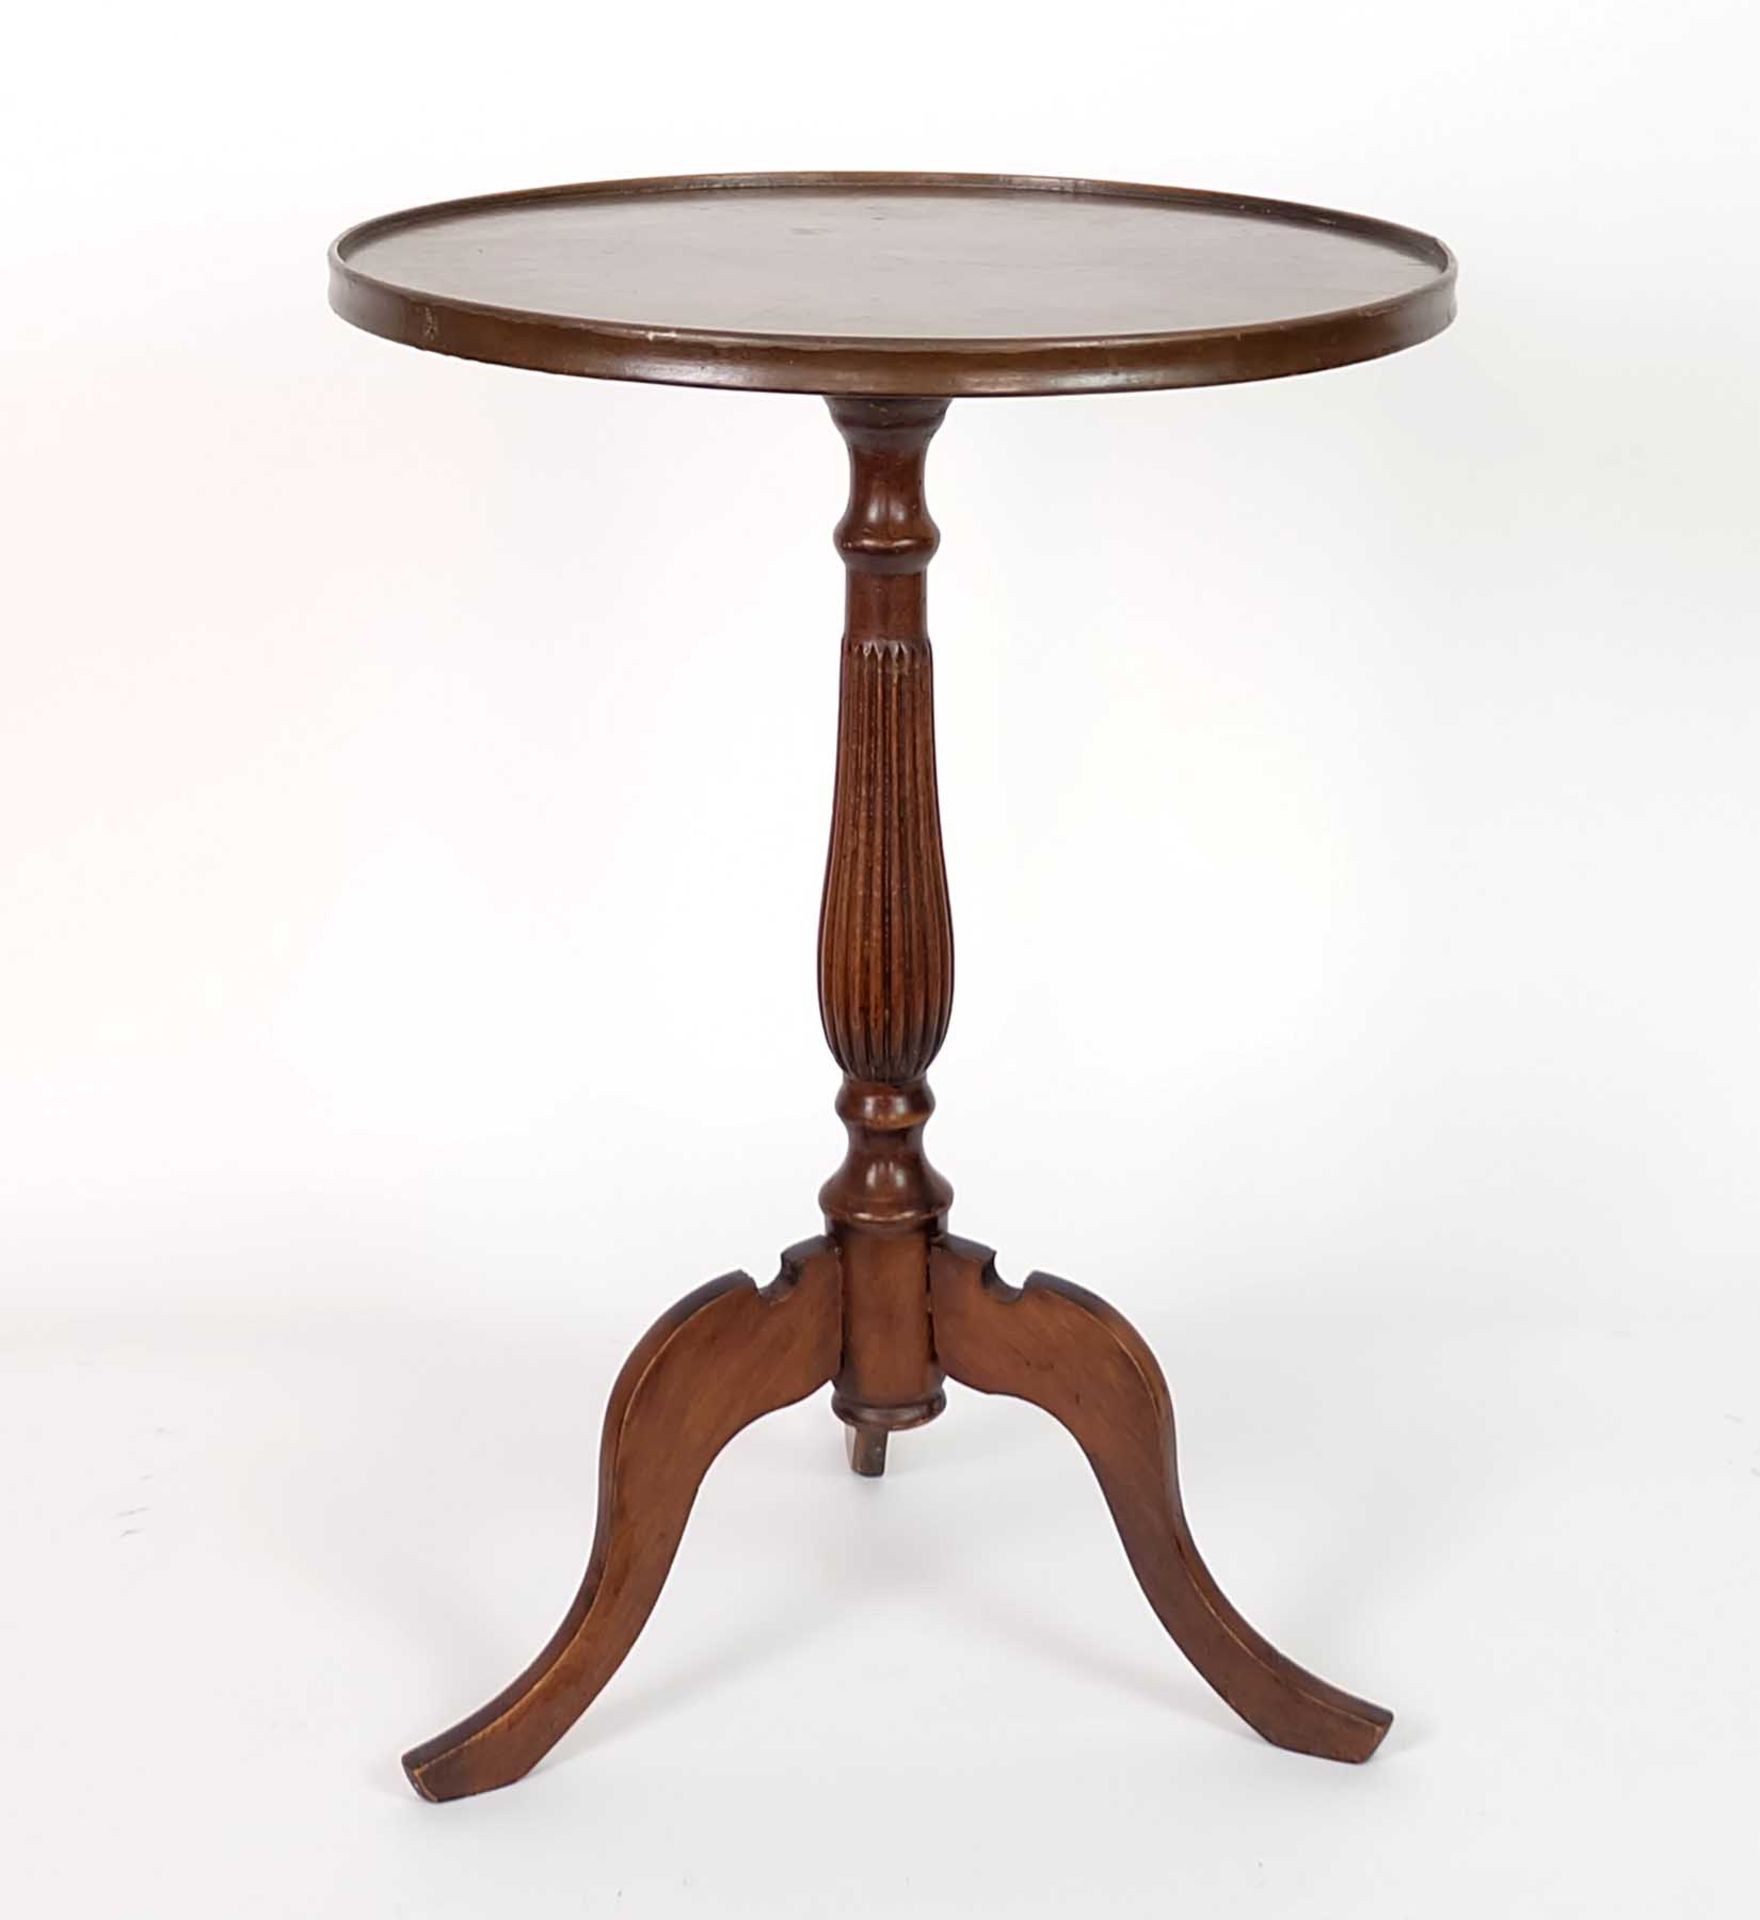 TRIPOD-TABLE, Spätvictorianische Epoche, George III-Stil, Mahagoni, runde Platte mit Tablettrand,